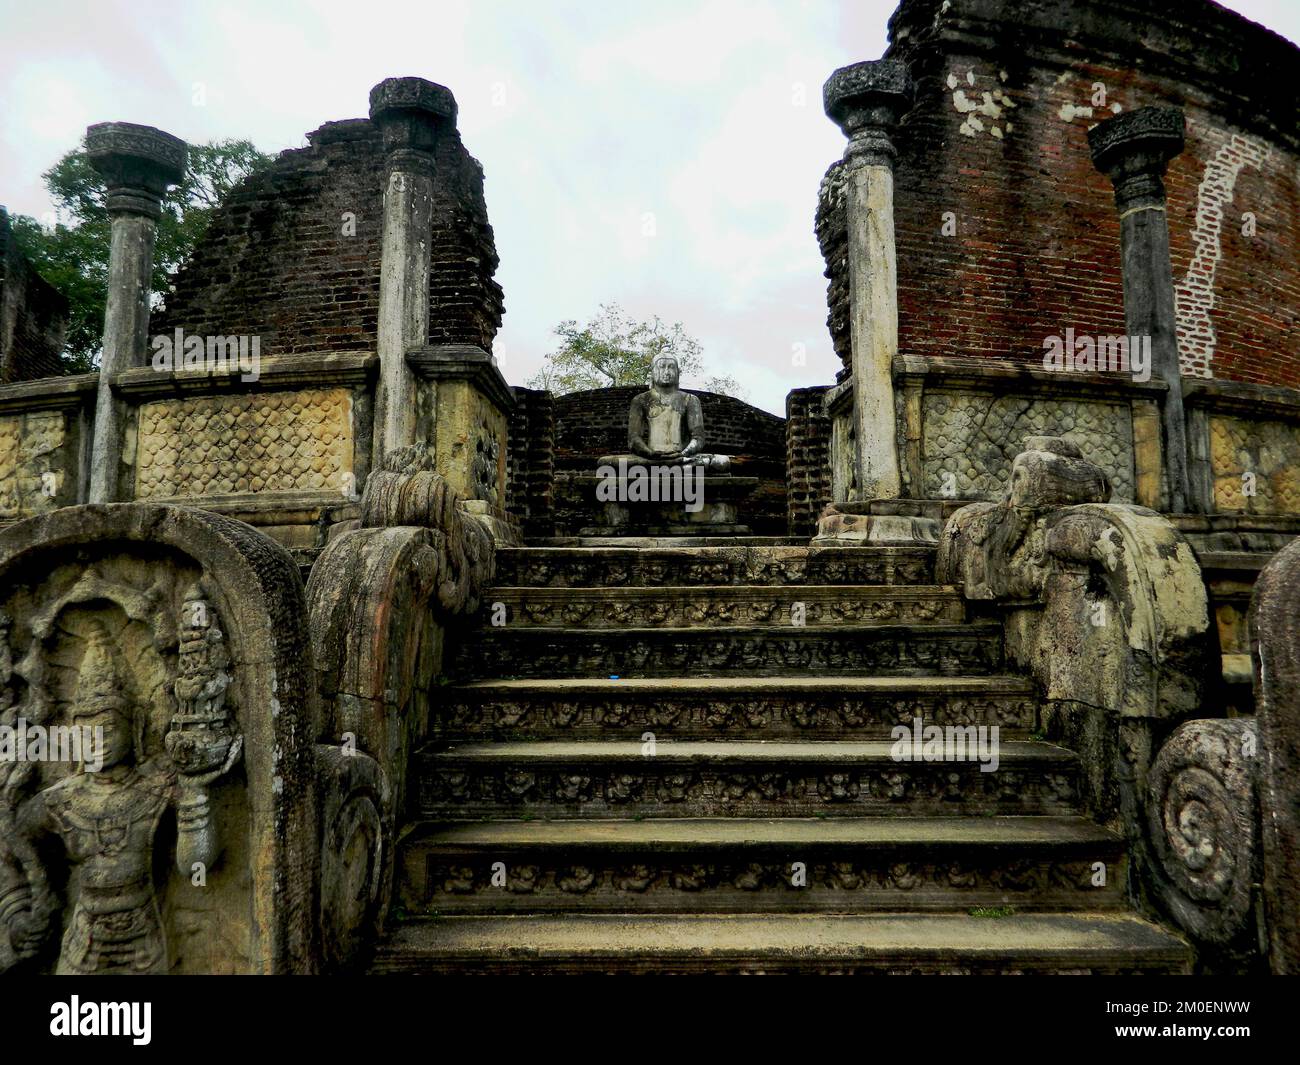 Polonnaruwa ist das zweite Königreich des antiken Sri Lanka. König Parakramabahu 4 entwickelte viele Wewas und Tempel und etablierte die Lebensgrundlage des Landes. Das Polonnaruwa Lankathilaka Image House ist ein monolithisches Buddha Image House, das auch von König Parakramabahu aus Ziegeln erbaut wurde. Die Außenwände sind mit aufwändigen Designs und Schnitzereien bedeckt. Die goldene Ära wurde von König Maga durch die Invasion und Zerstörung der Tempel und Schreine des Königreichs ruiniert. Polonnaruwa, Sri Lanka. Stockfoto